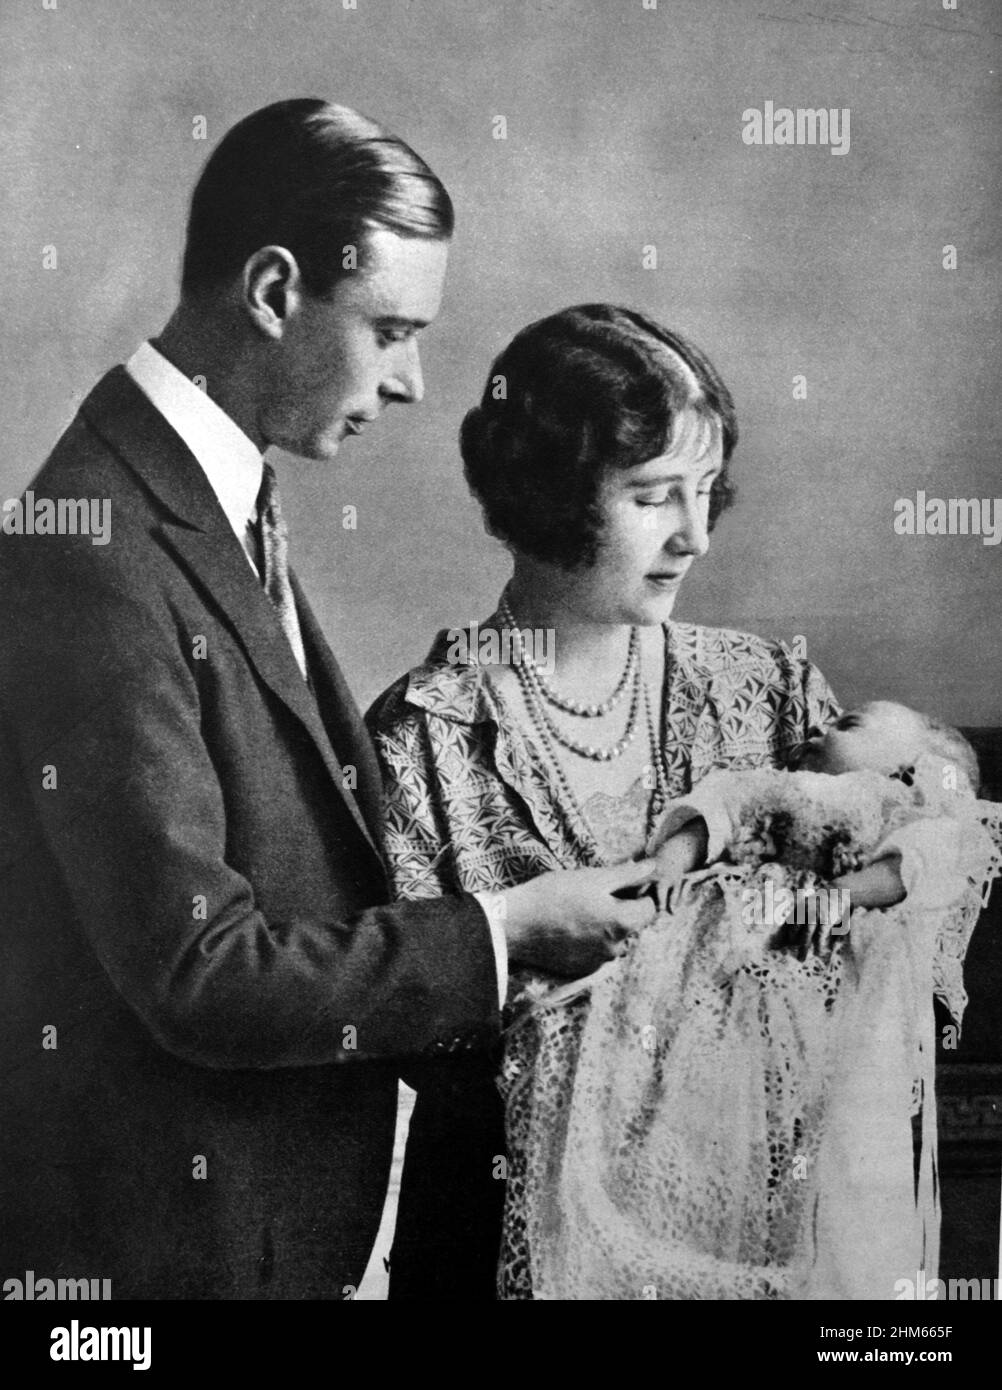 Familienportrait des Herzogs und der Herzogin von York (später König George VI. Und Königin Elizabeth) mit der neugeborenen Prinzessin (später Königin Elizabeth II.). 1926 Stockfoto